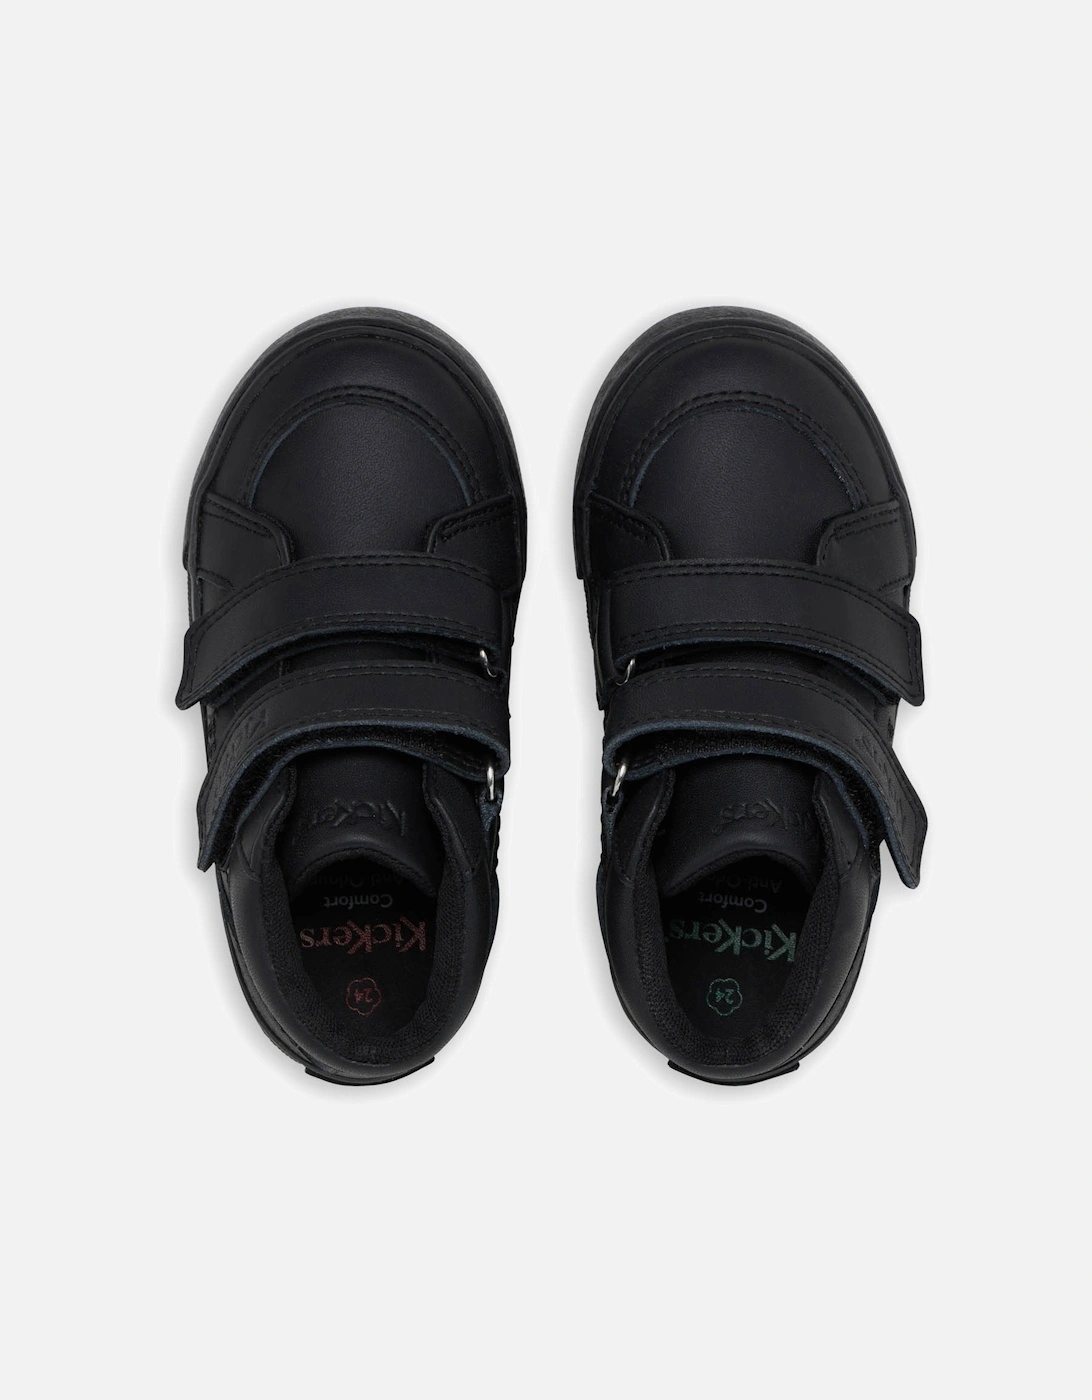 Infants Tovni Hi Leather Shoes (Black)